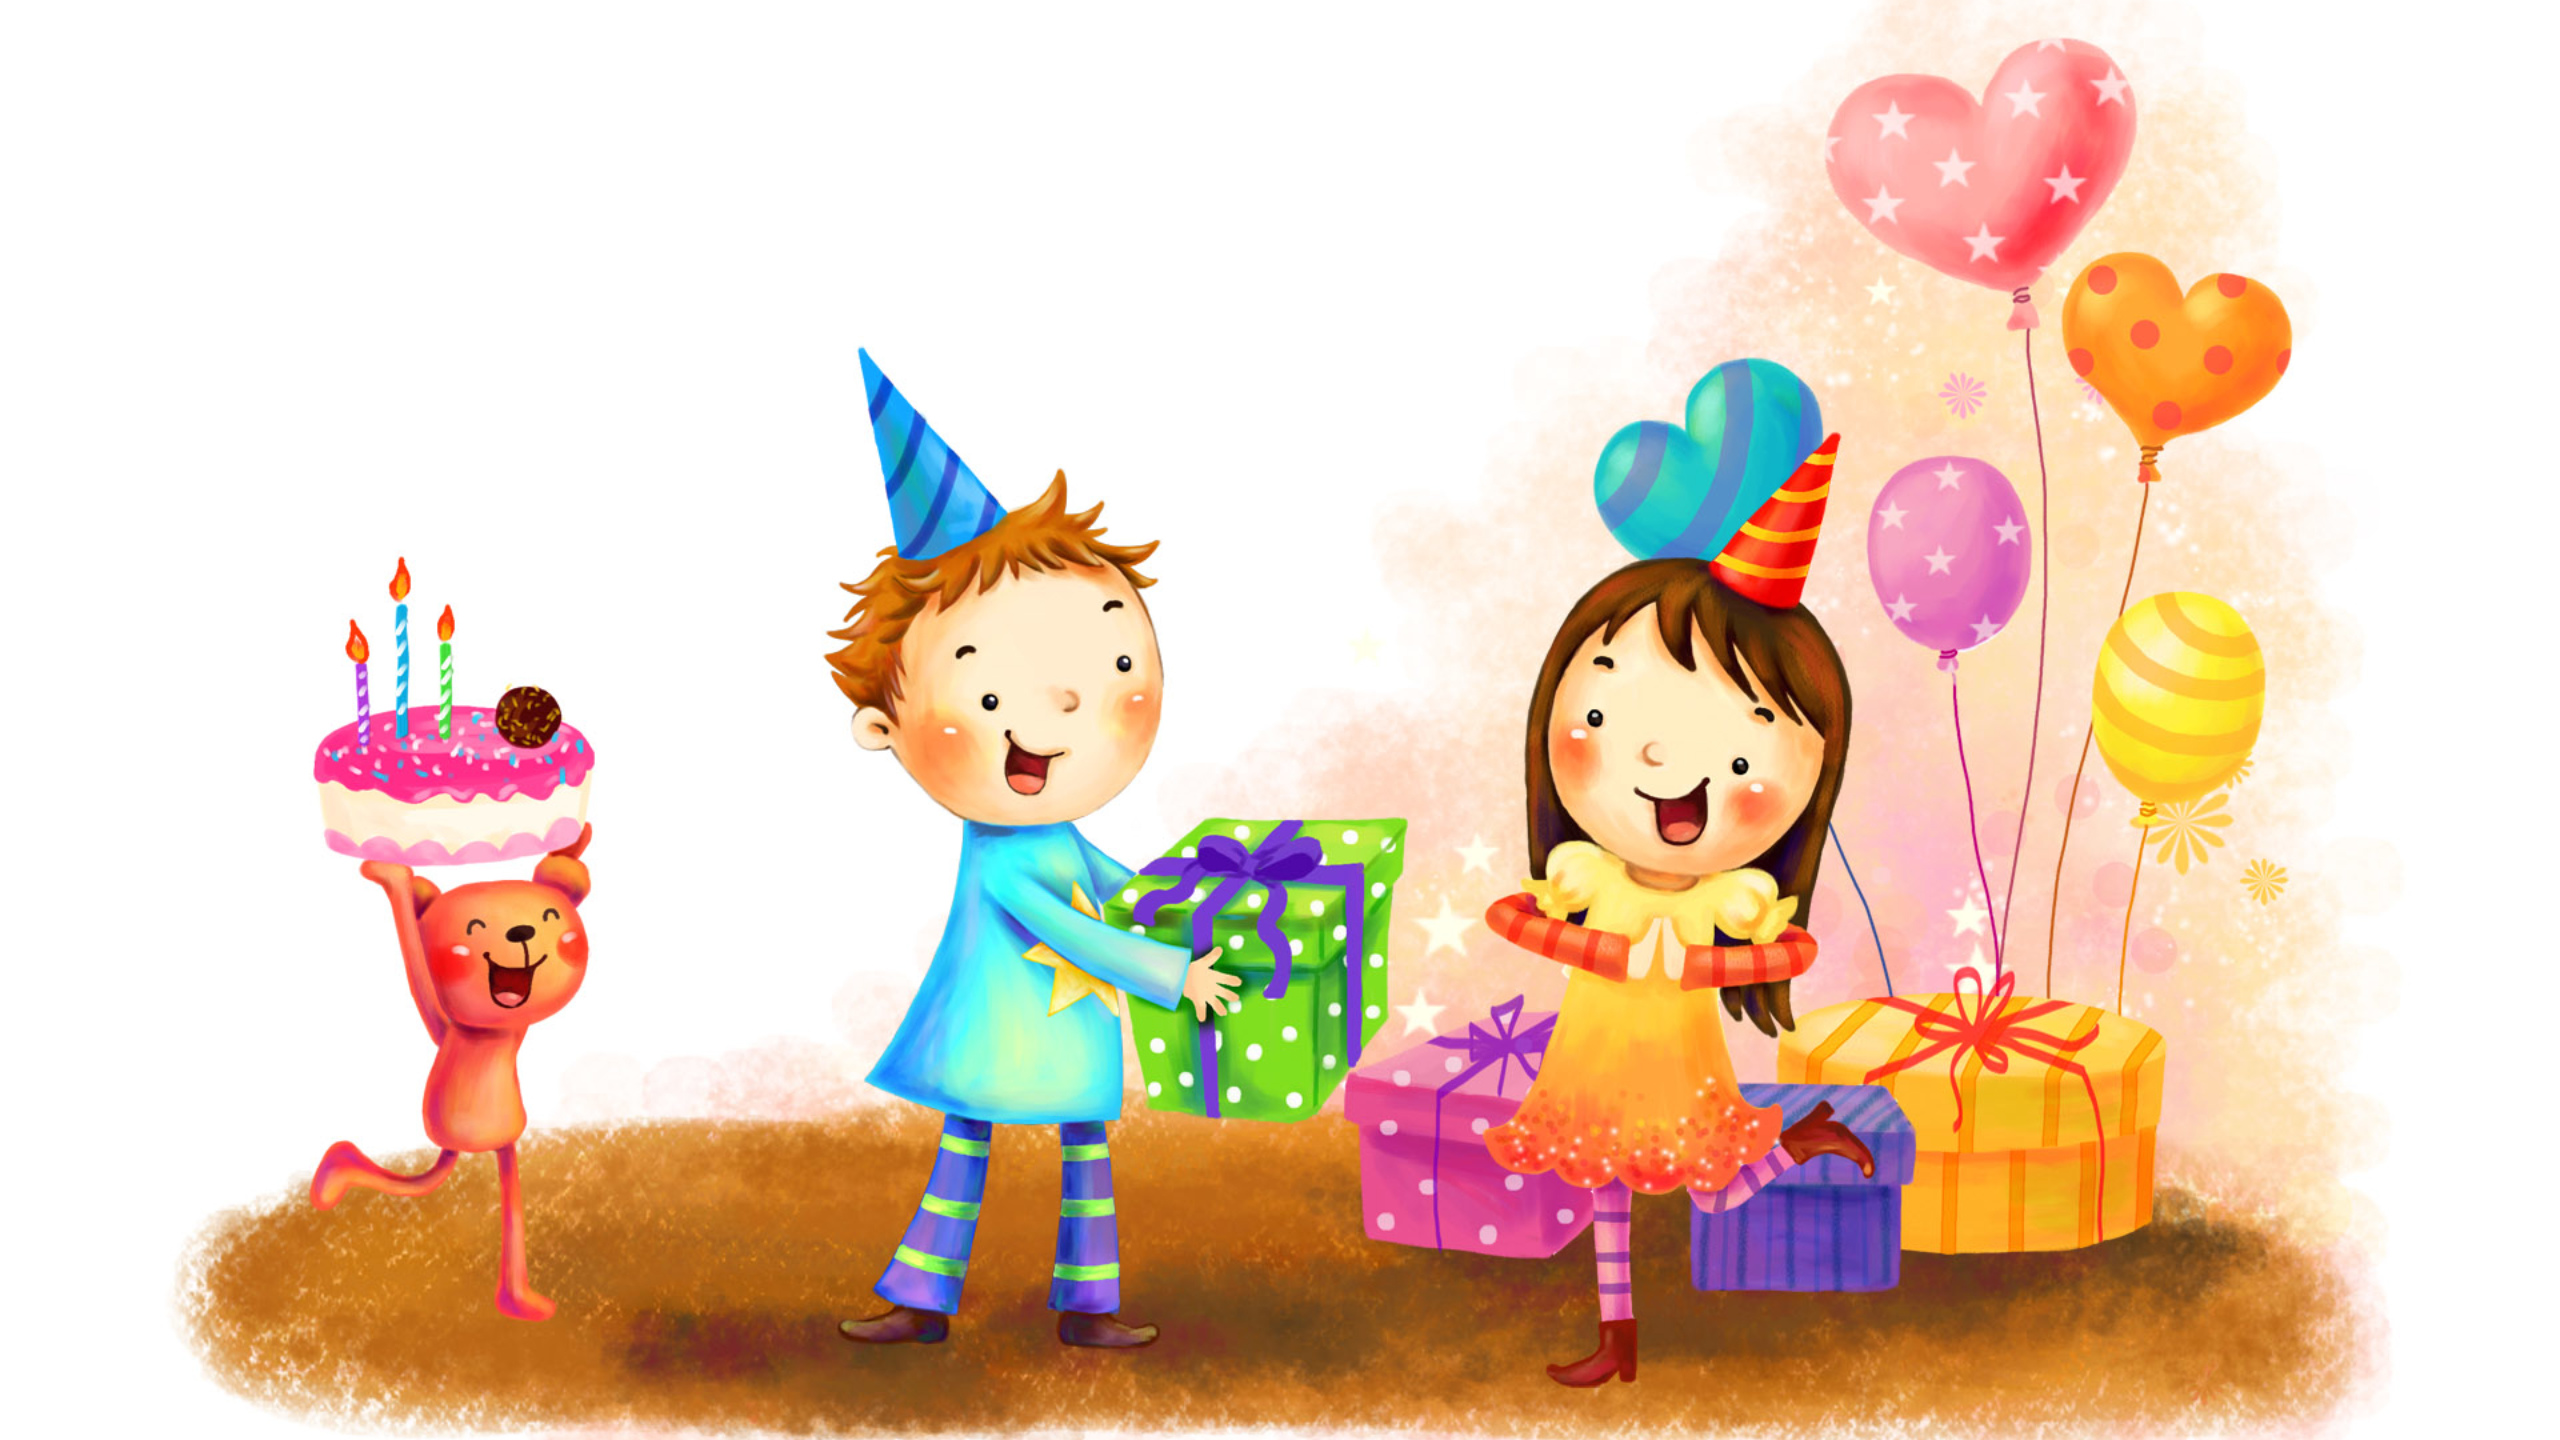 День рождения людей в апреле. С днем рождения иллюстрация. С днём рождения нарисованные картинки. С днём рождения девочке. Картинки с днём рождения детские.